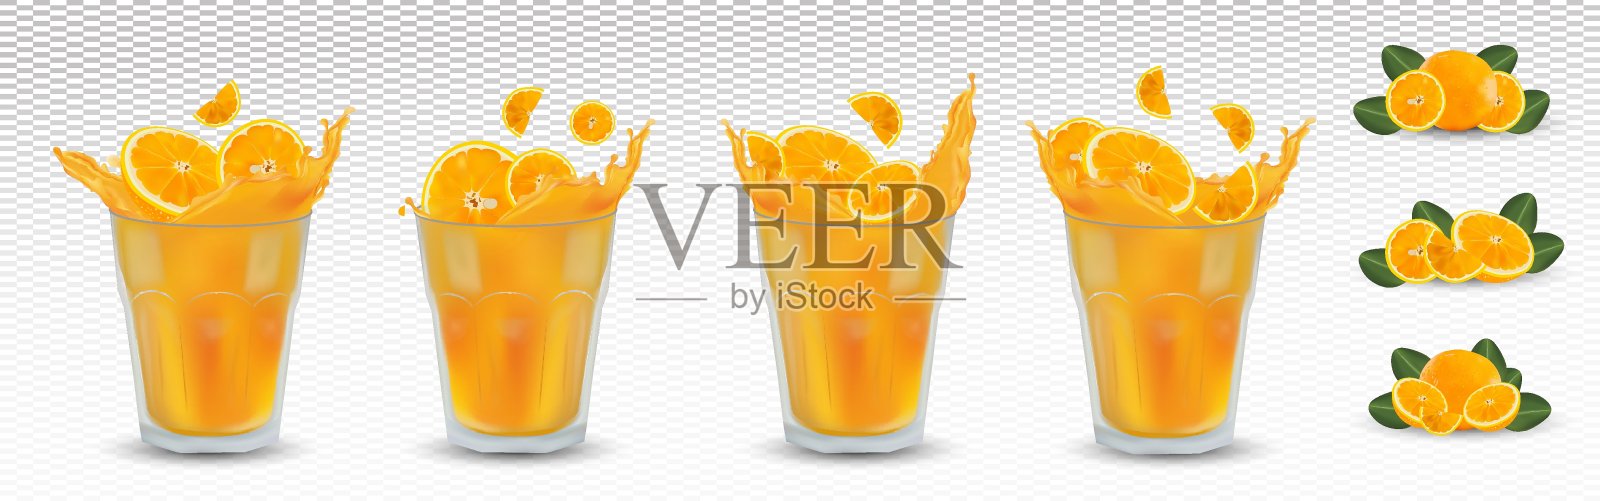 鲜榨橙汁装在透明的玻璃杯里。3D逼真的橙色飞溅。靠近果汁。橙色切片，带有绿叶，背景透明。矢量图。插画图片素材